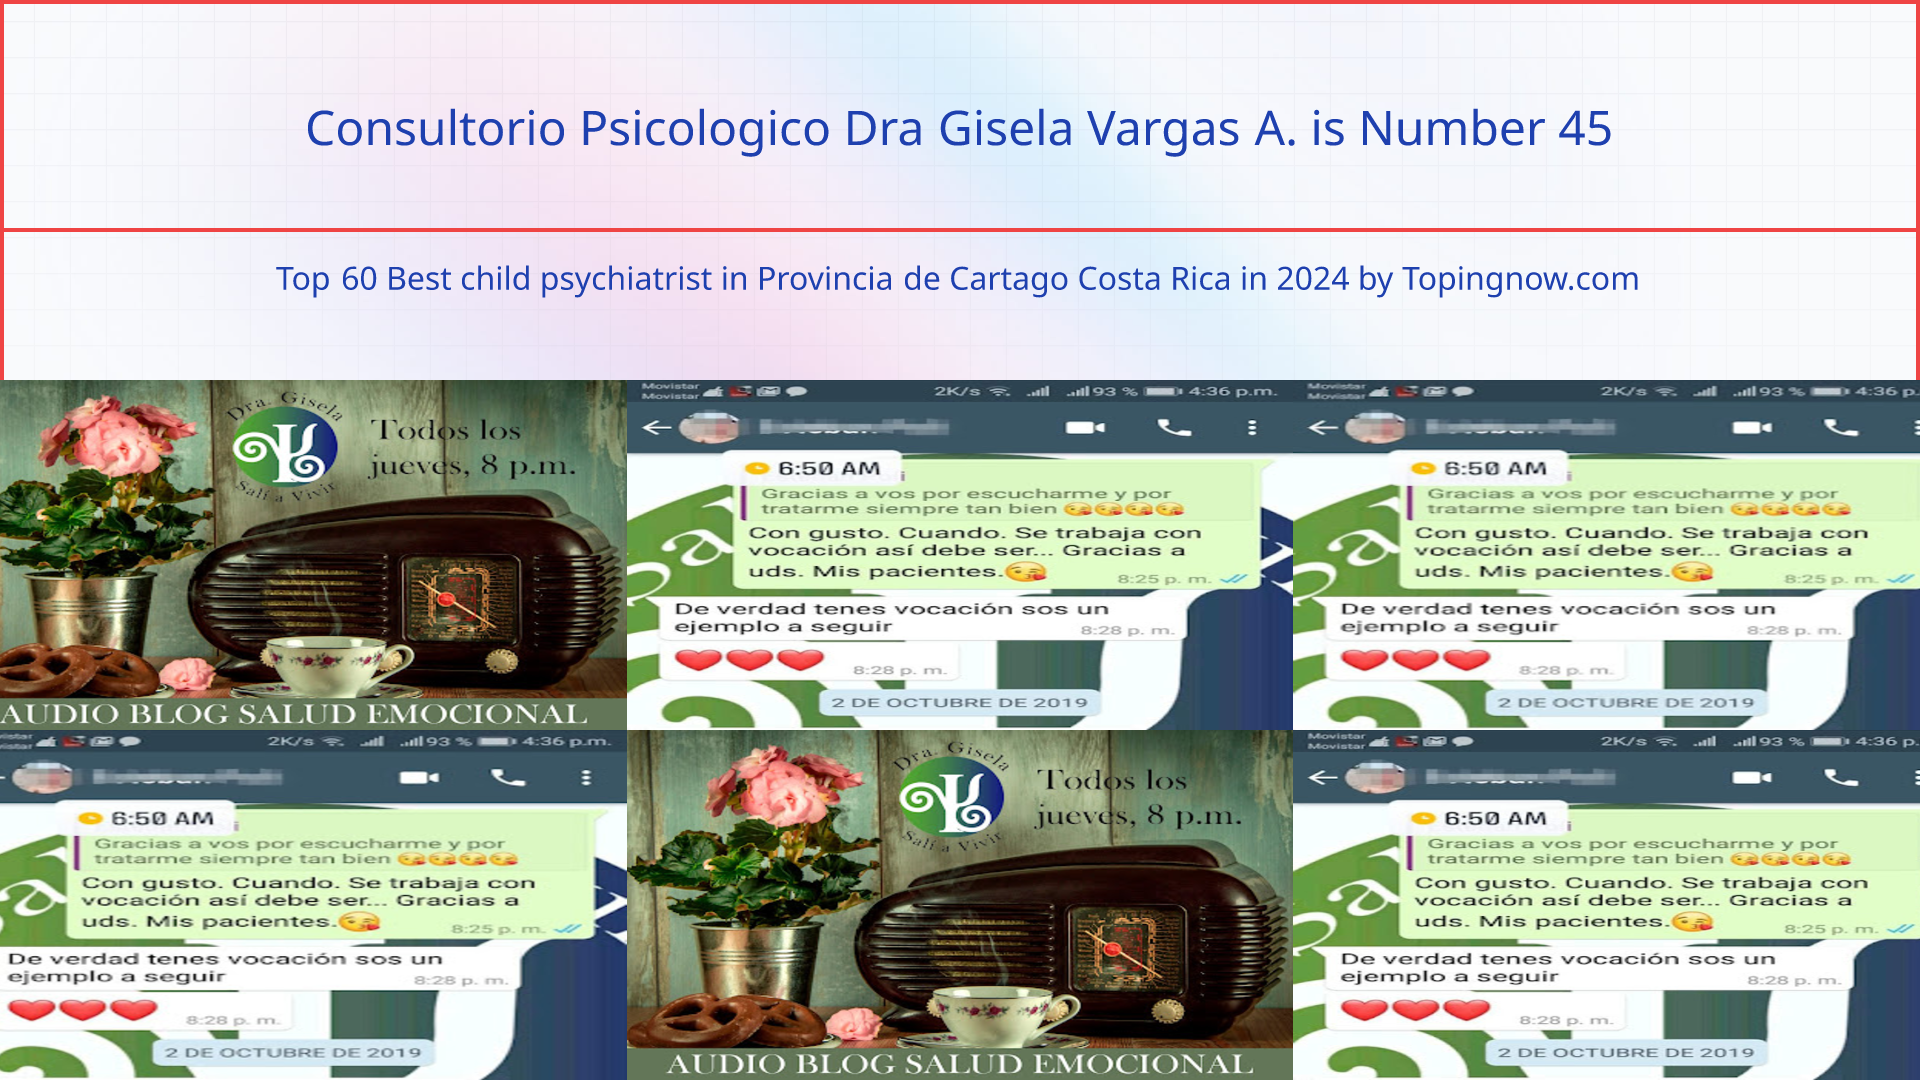 Consultorio Psicologico Dra Gisela Vargas A.: Top 60 Best child psychiatrist in Provincia de Cartago Costa Rica in 2024